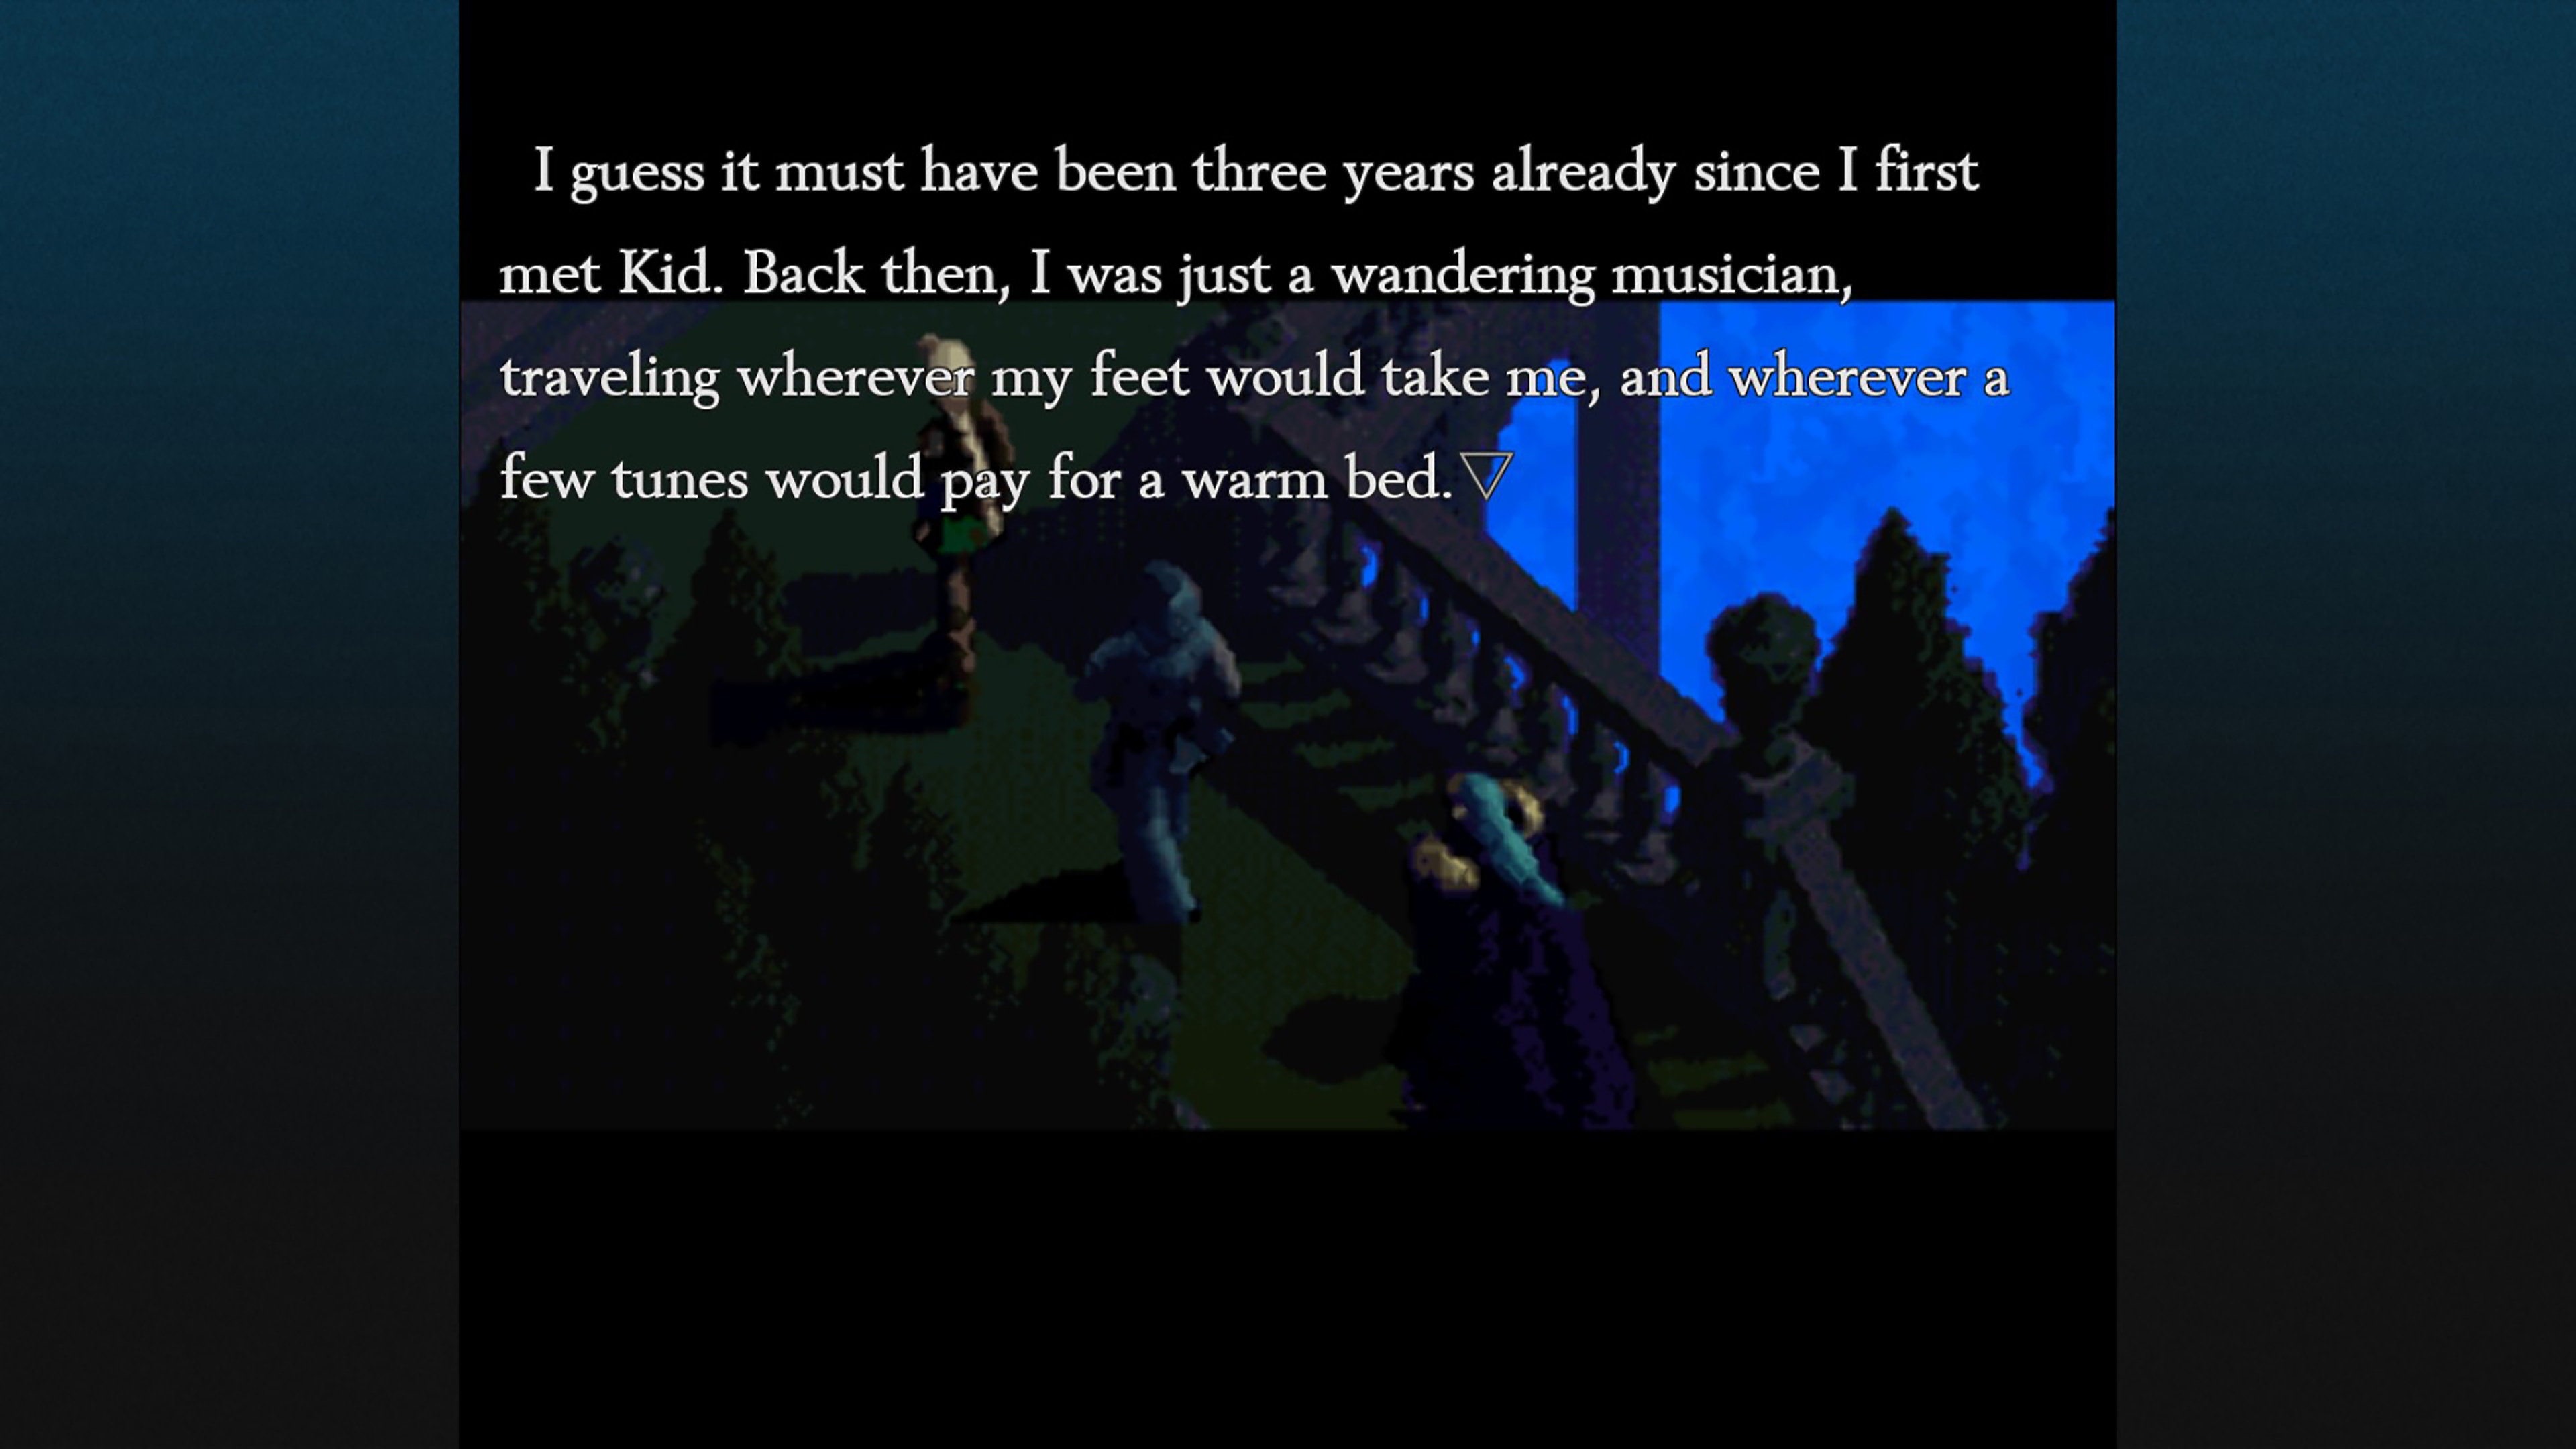 Chrono Cross: The Radical Dreamers Edition-képernyőkép két beszélgető szereplővel